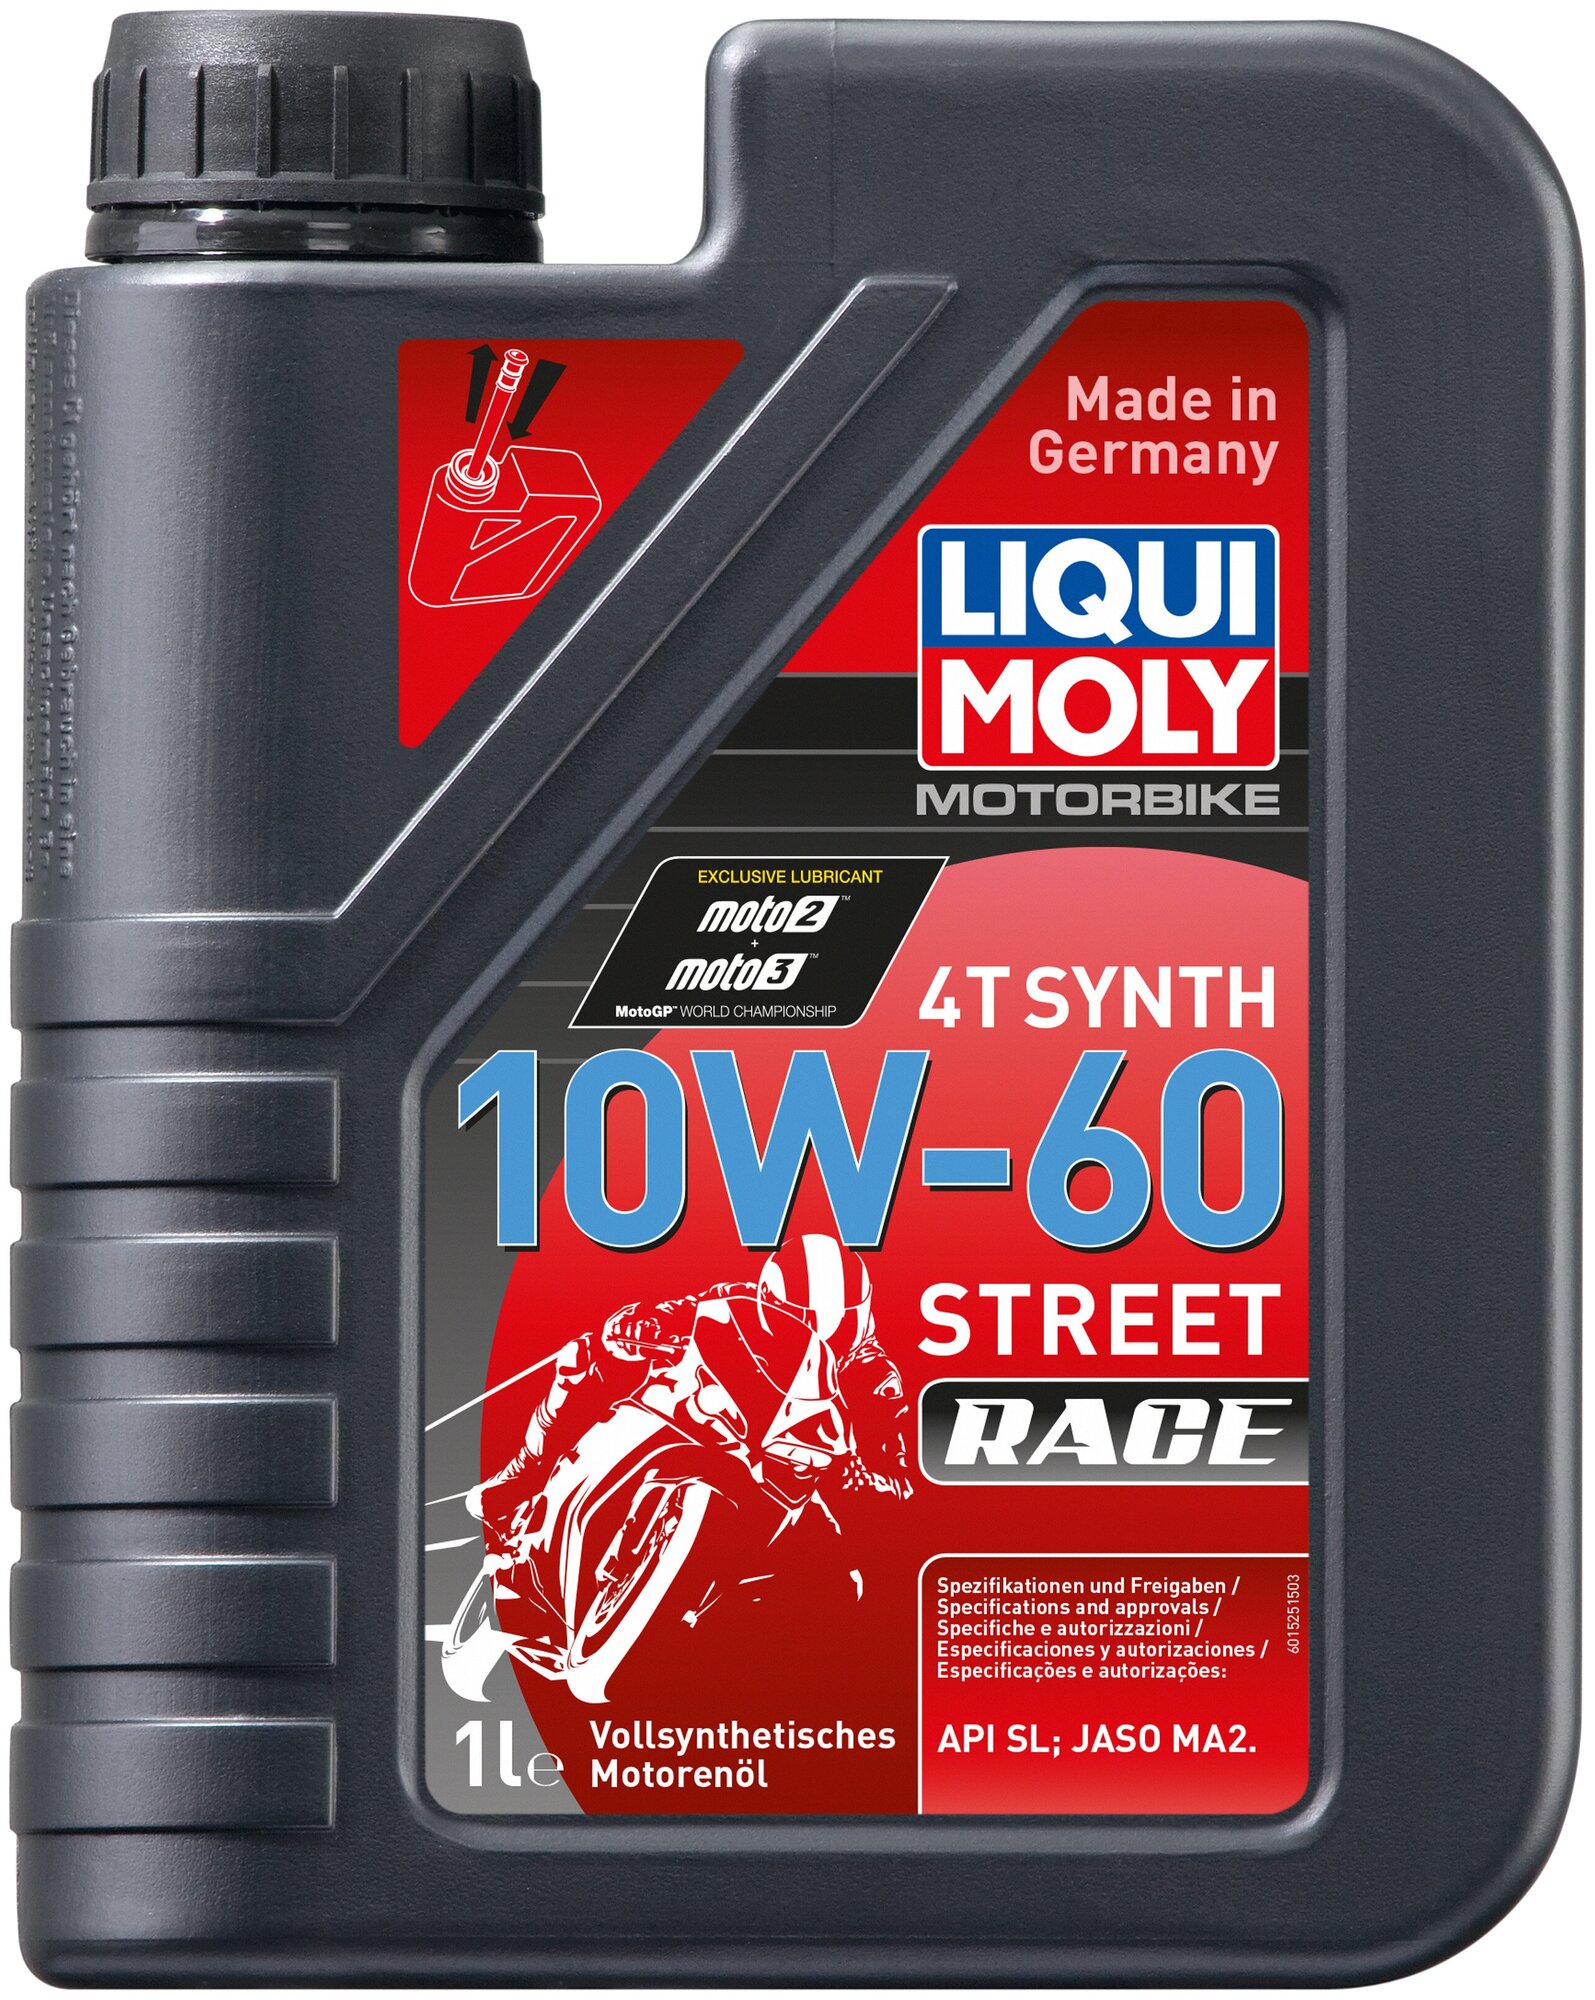 Синтетическое моторное масло LIQUI MOLY Motorbike 4T Synth 10W-60 Street Race